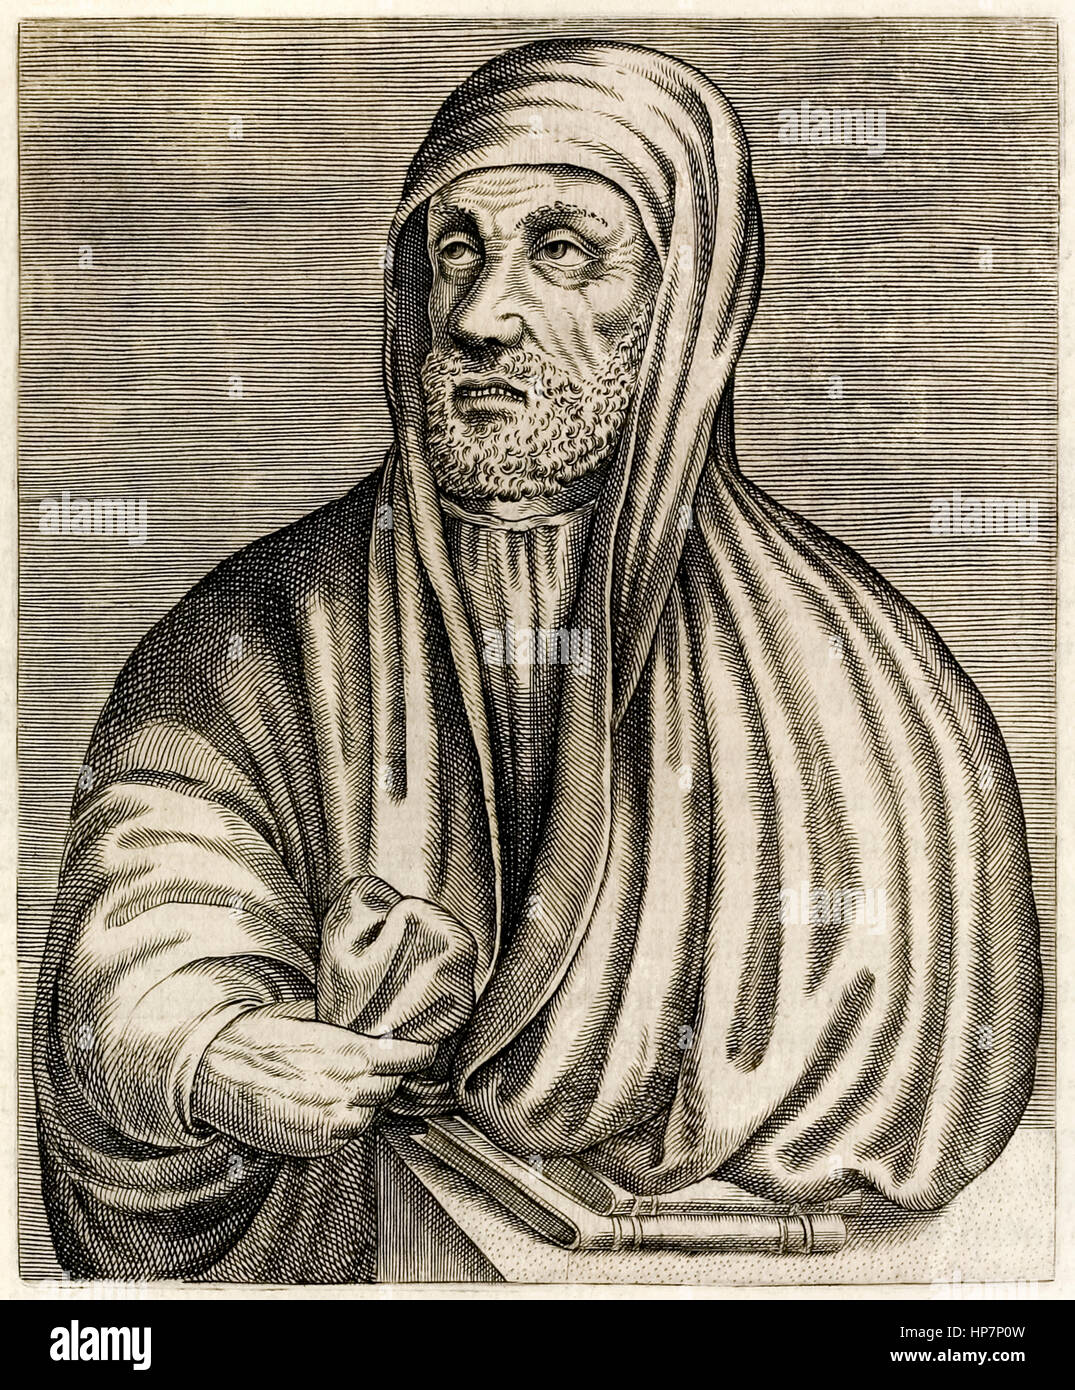 Avicenna o Ibn Sina (c.980-1037) polymath persiano chi è enciclopedia di medicina "il canone della medicina" è stato il lavoro autorevole sulla medicina per tutto il medioevo. Incisione da "Vero ritratti…" da André Thévet pubblicato nel 1584. Foto Stock